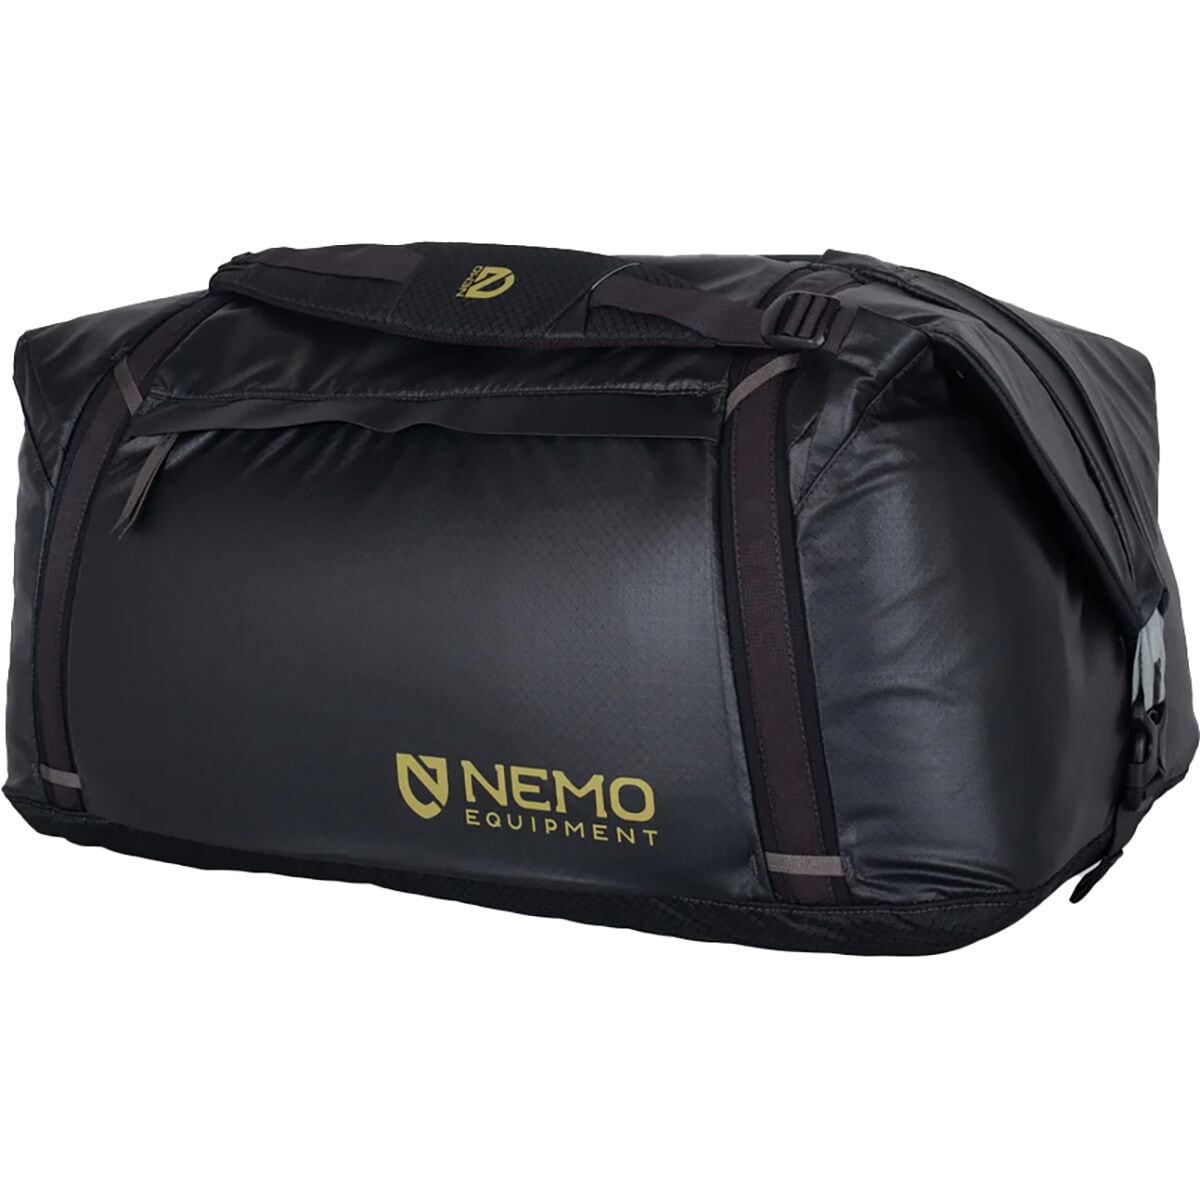 Двойная трансформируемая спортивная сумка объемом 100 л Nemo Equipment Inc., черный